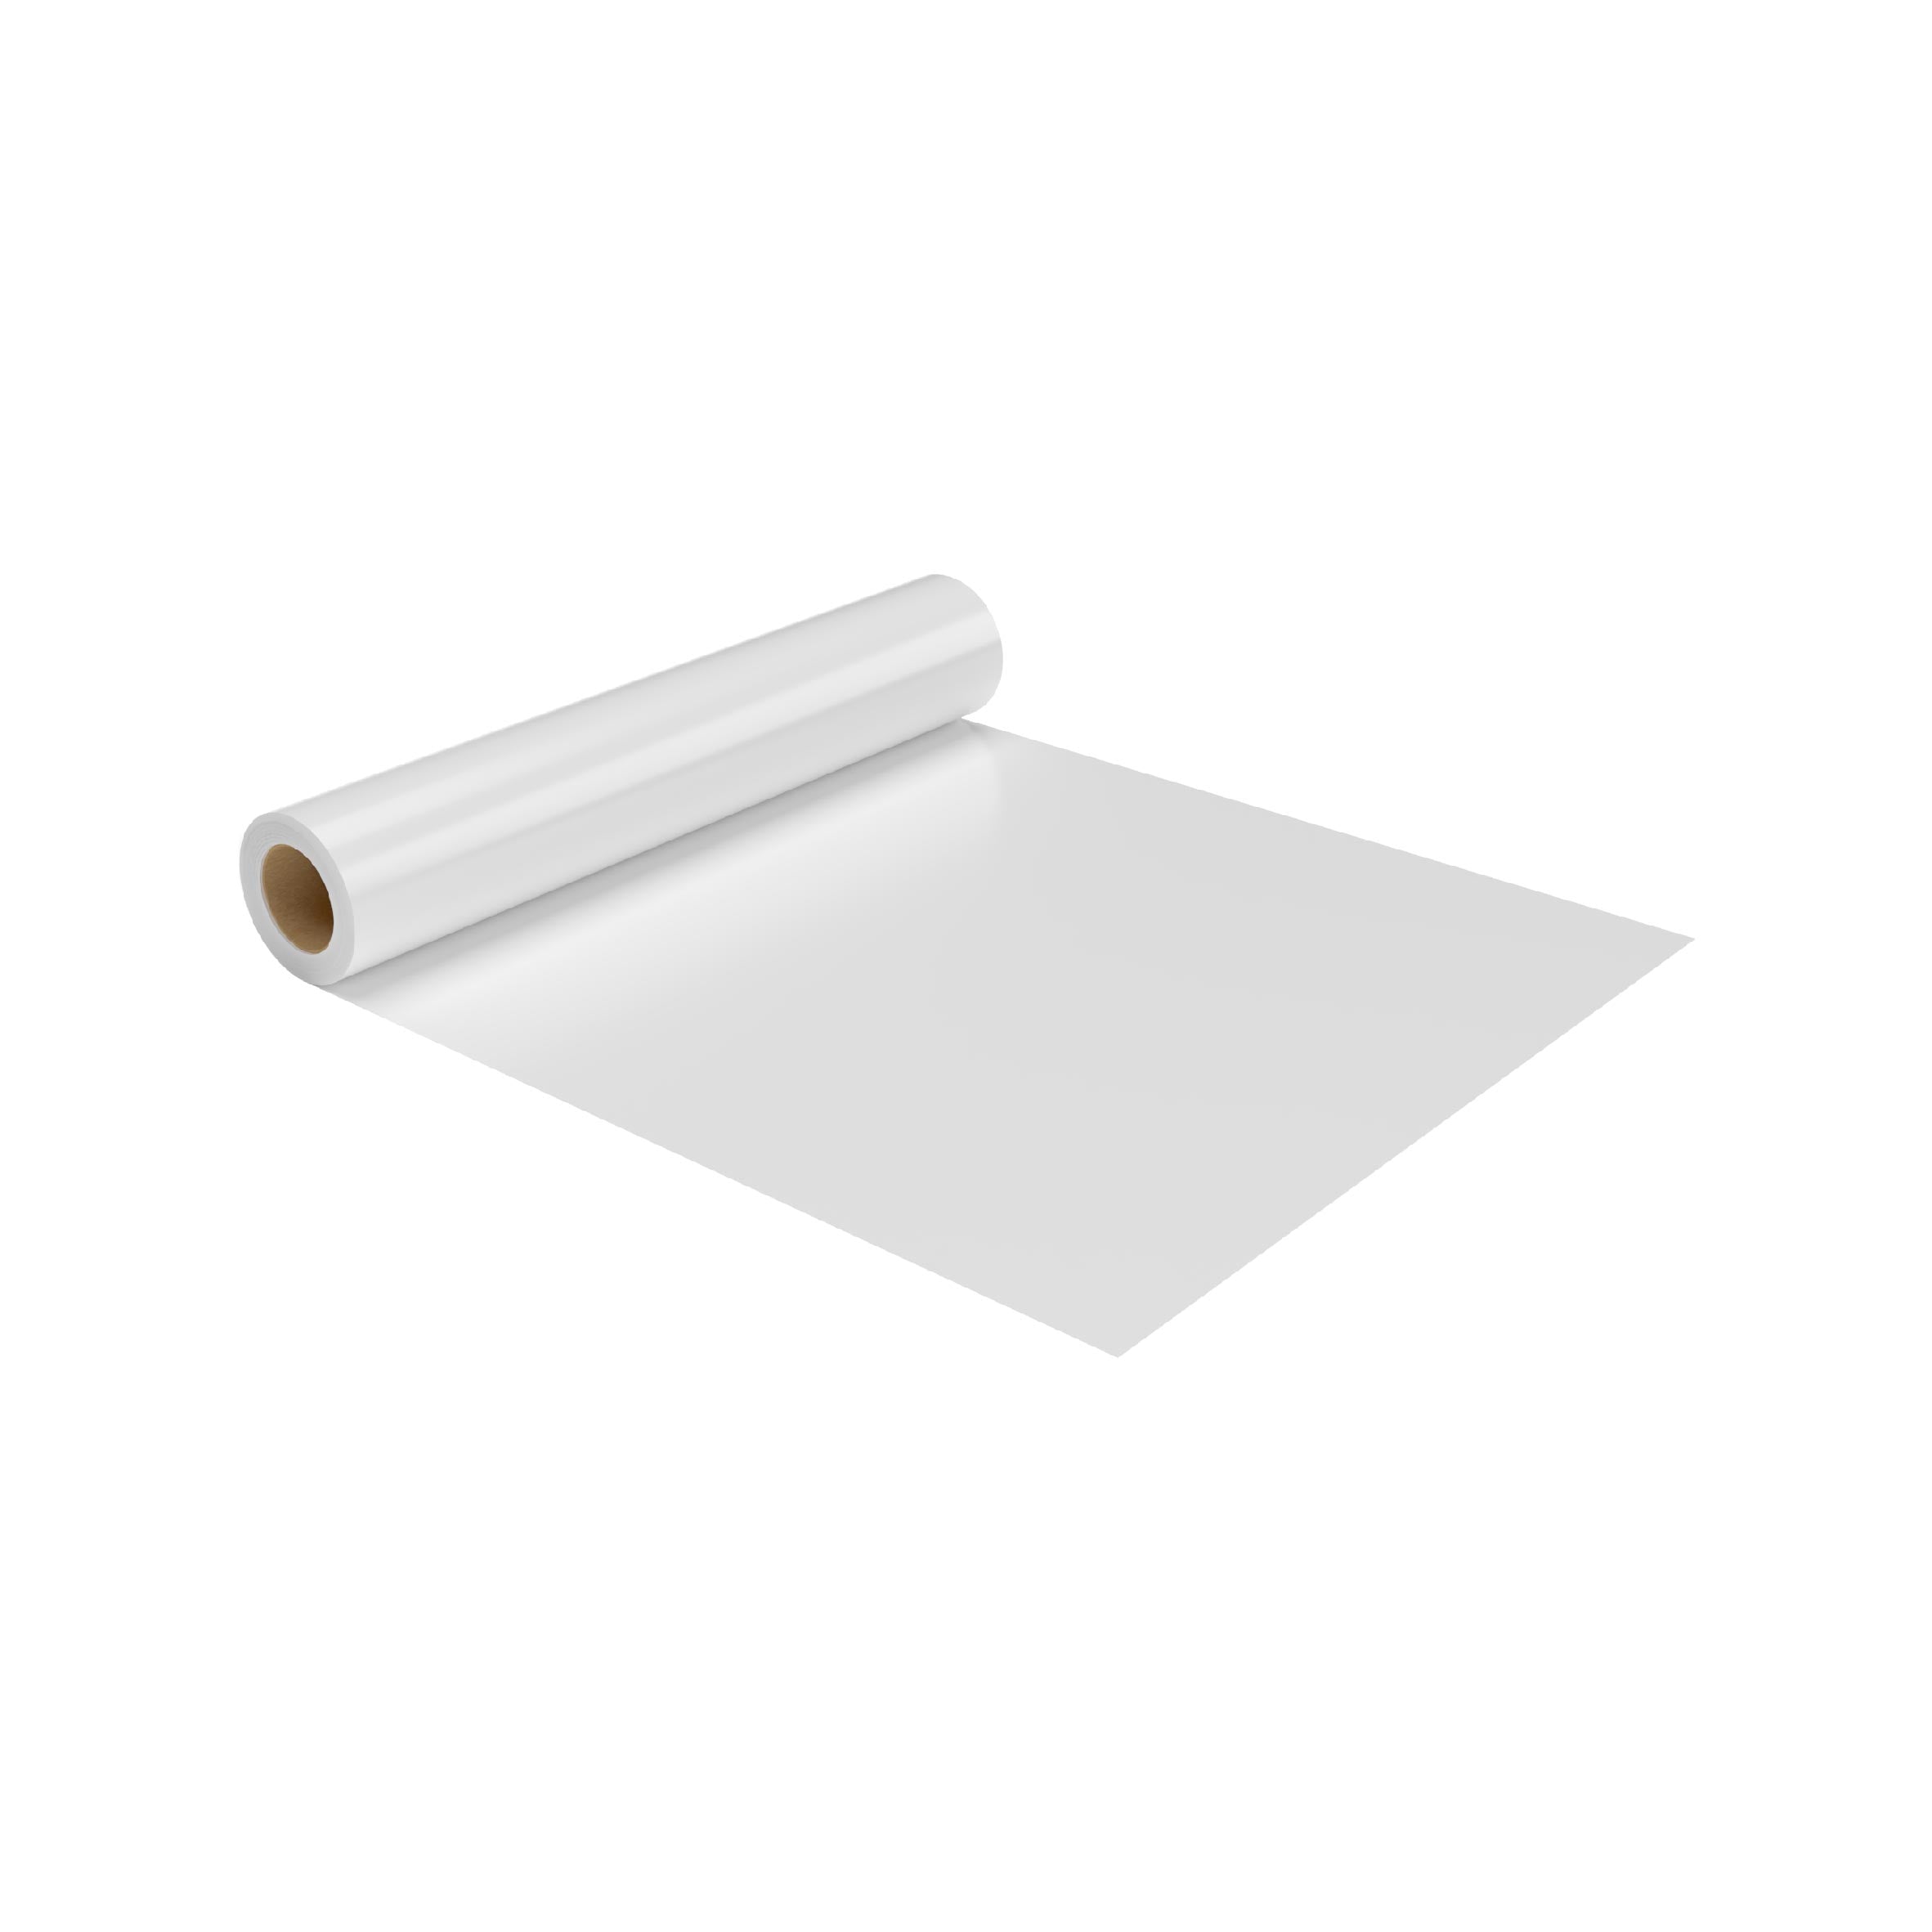 White Sofra Table Sheet - Hotpack Global